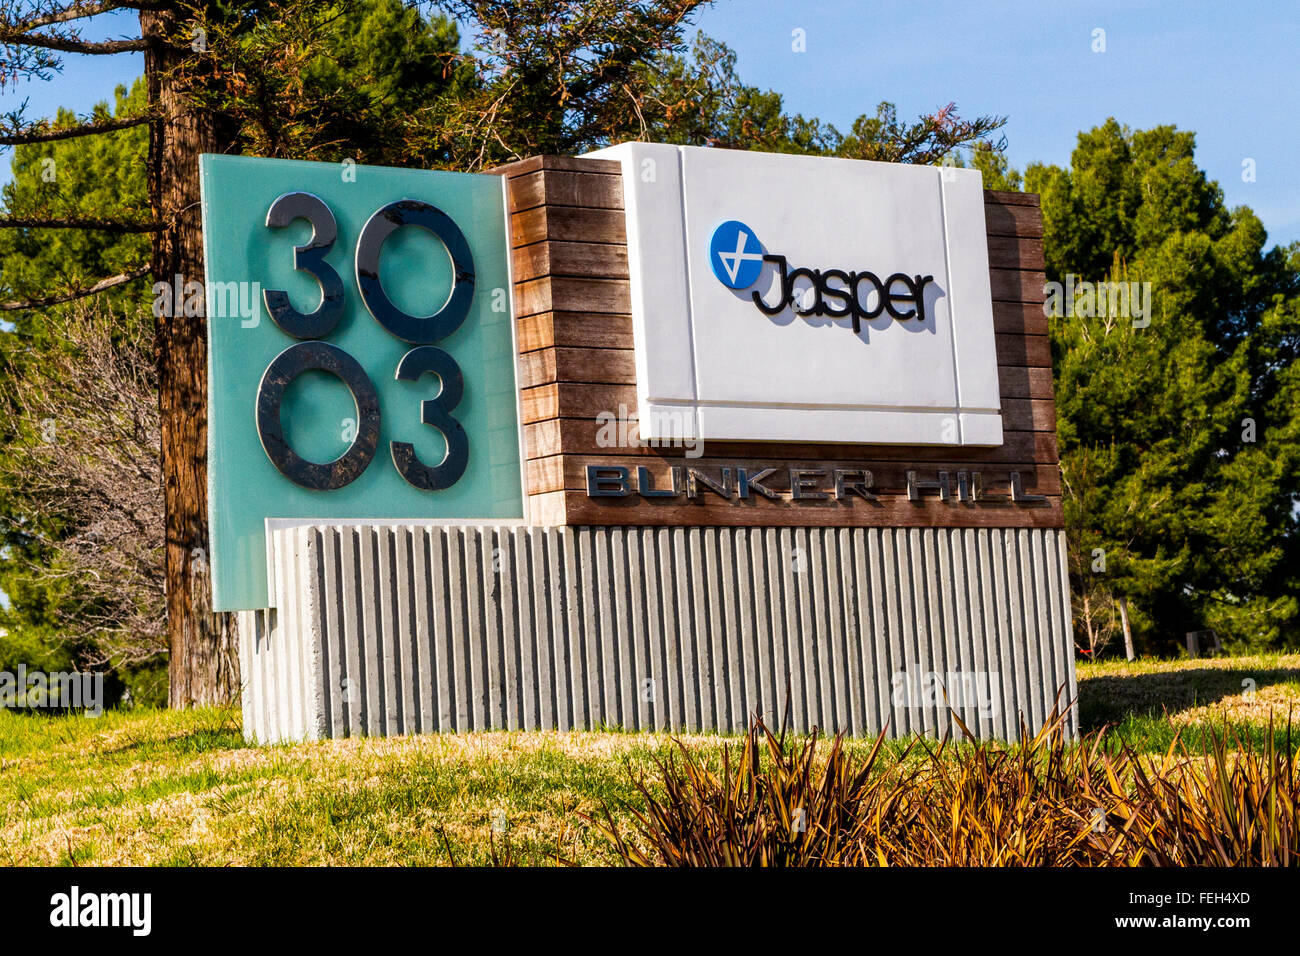 Jasper Technologies in Santa Clara Kalifornien Cisco angekündigt, dass es Jasper für 1,4 Milliarden US-Dollar kauft im Februar 2016 Stockfoto